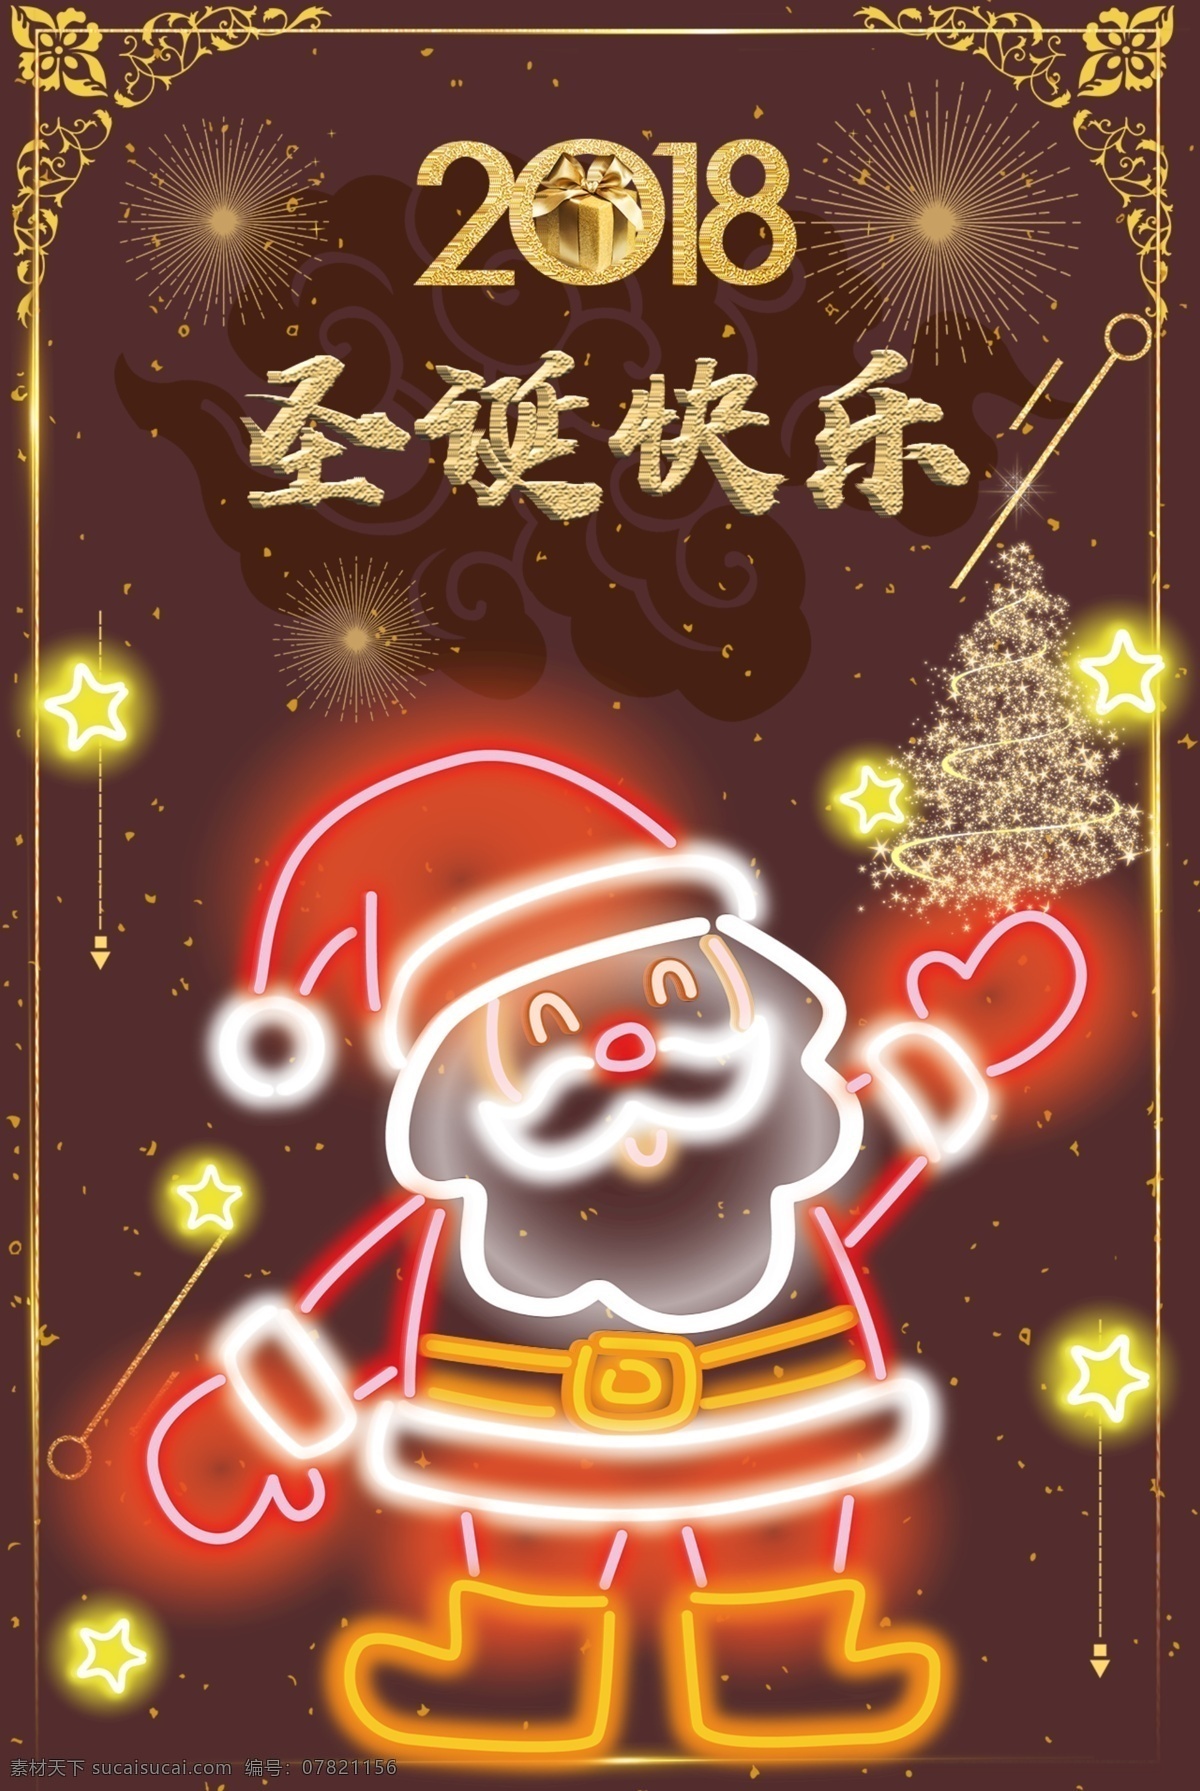 2018 圣诞 节日 宣传 节日宣传 圣诞节 圣诞老人 发光海报 发光圣诞海报